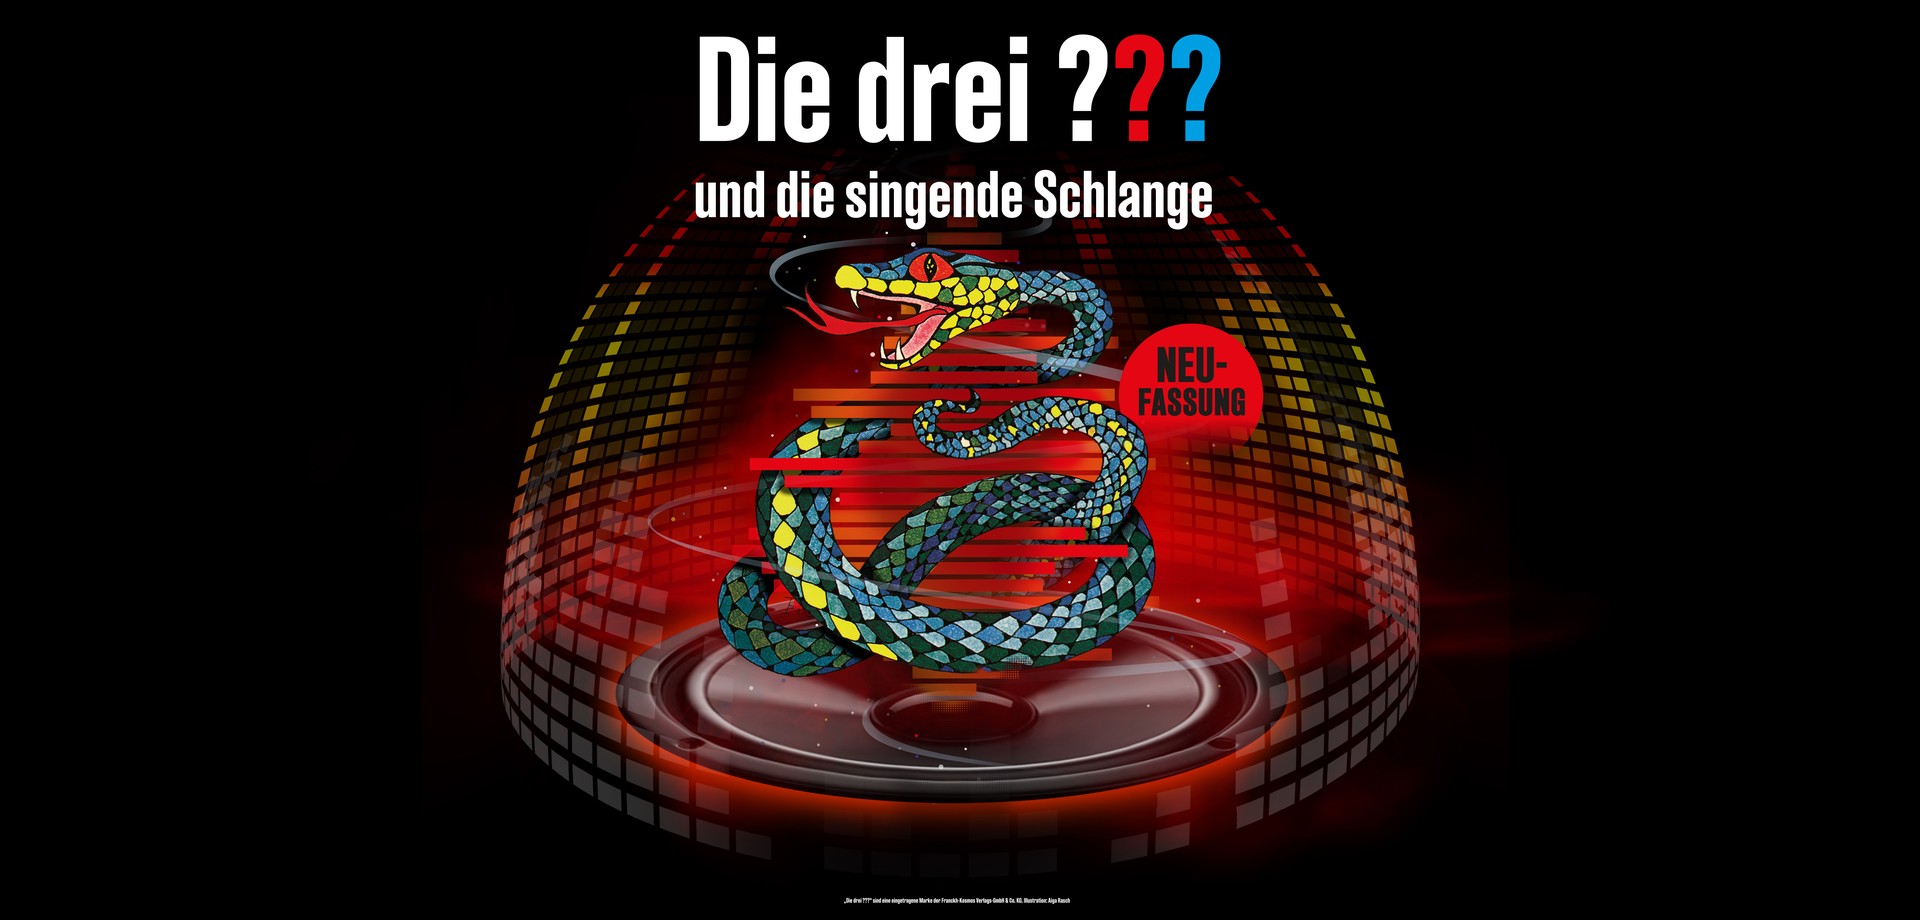 Plakat zum Hörspiel mit Schriftzug "Die drei ???", farbiger Dome-Darstellung und einem Lautsprecher auf dem eine gezeichnete Schlange sitzt.